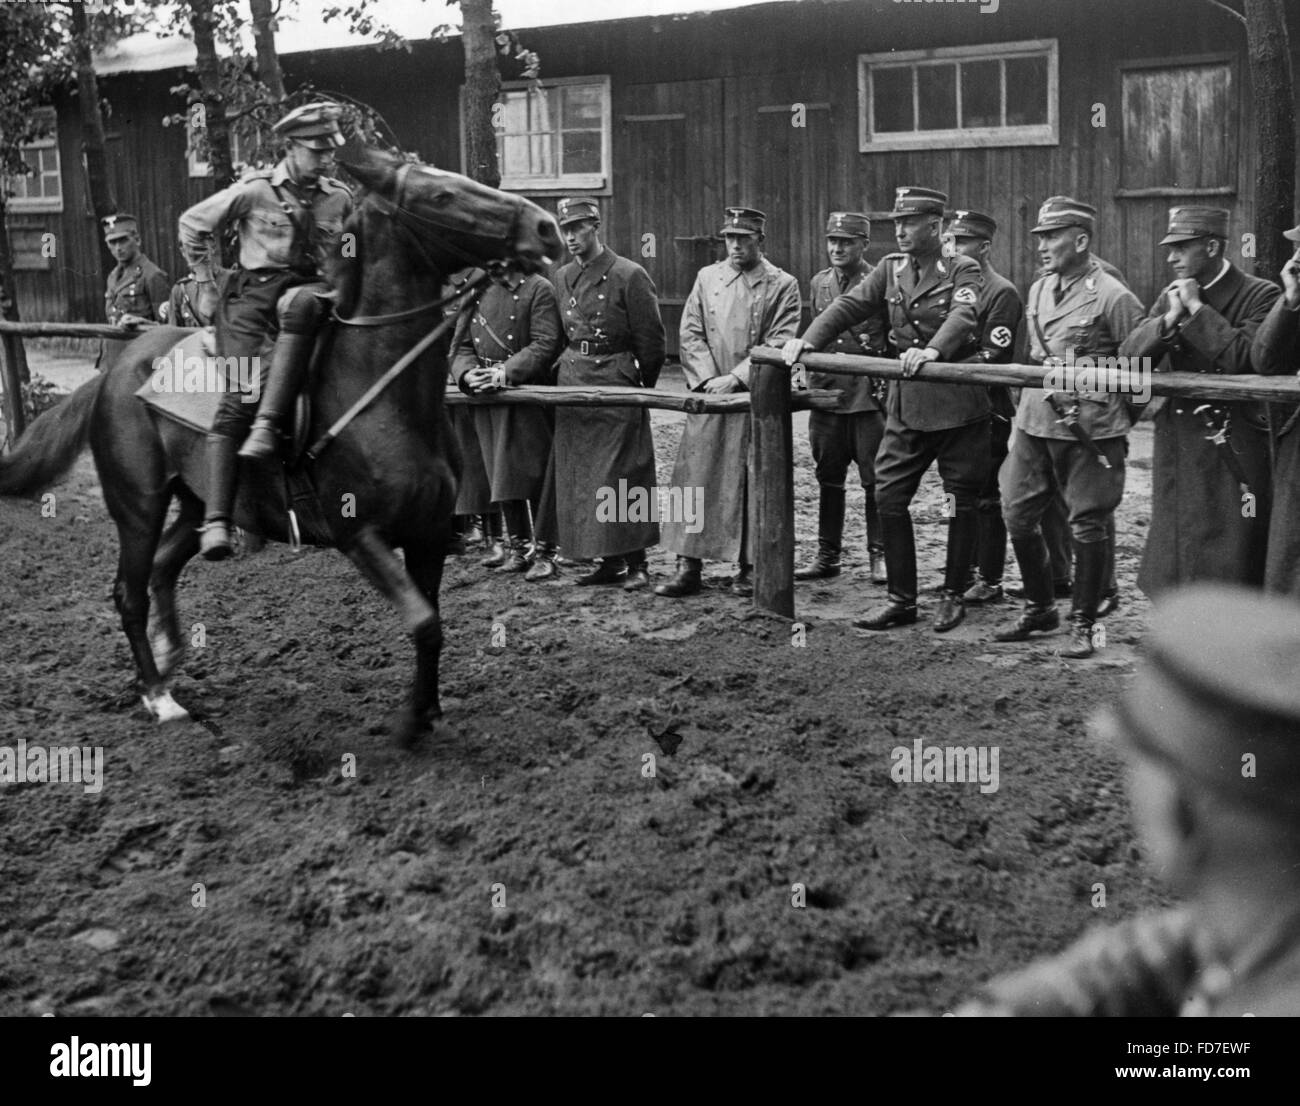 Max Lehmann and Standartenfuehrer von Schwerin at a horse show, 1938 Stock Photo